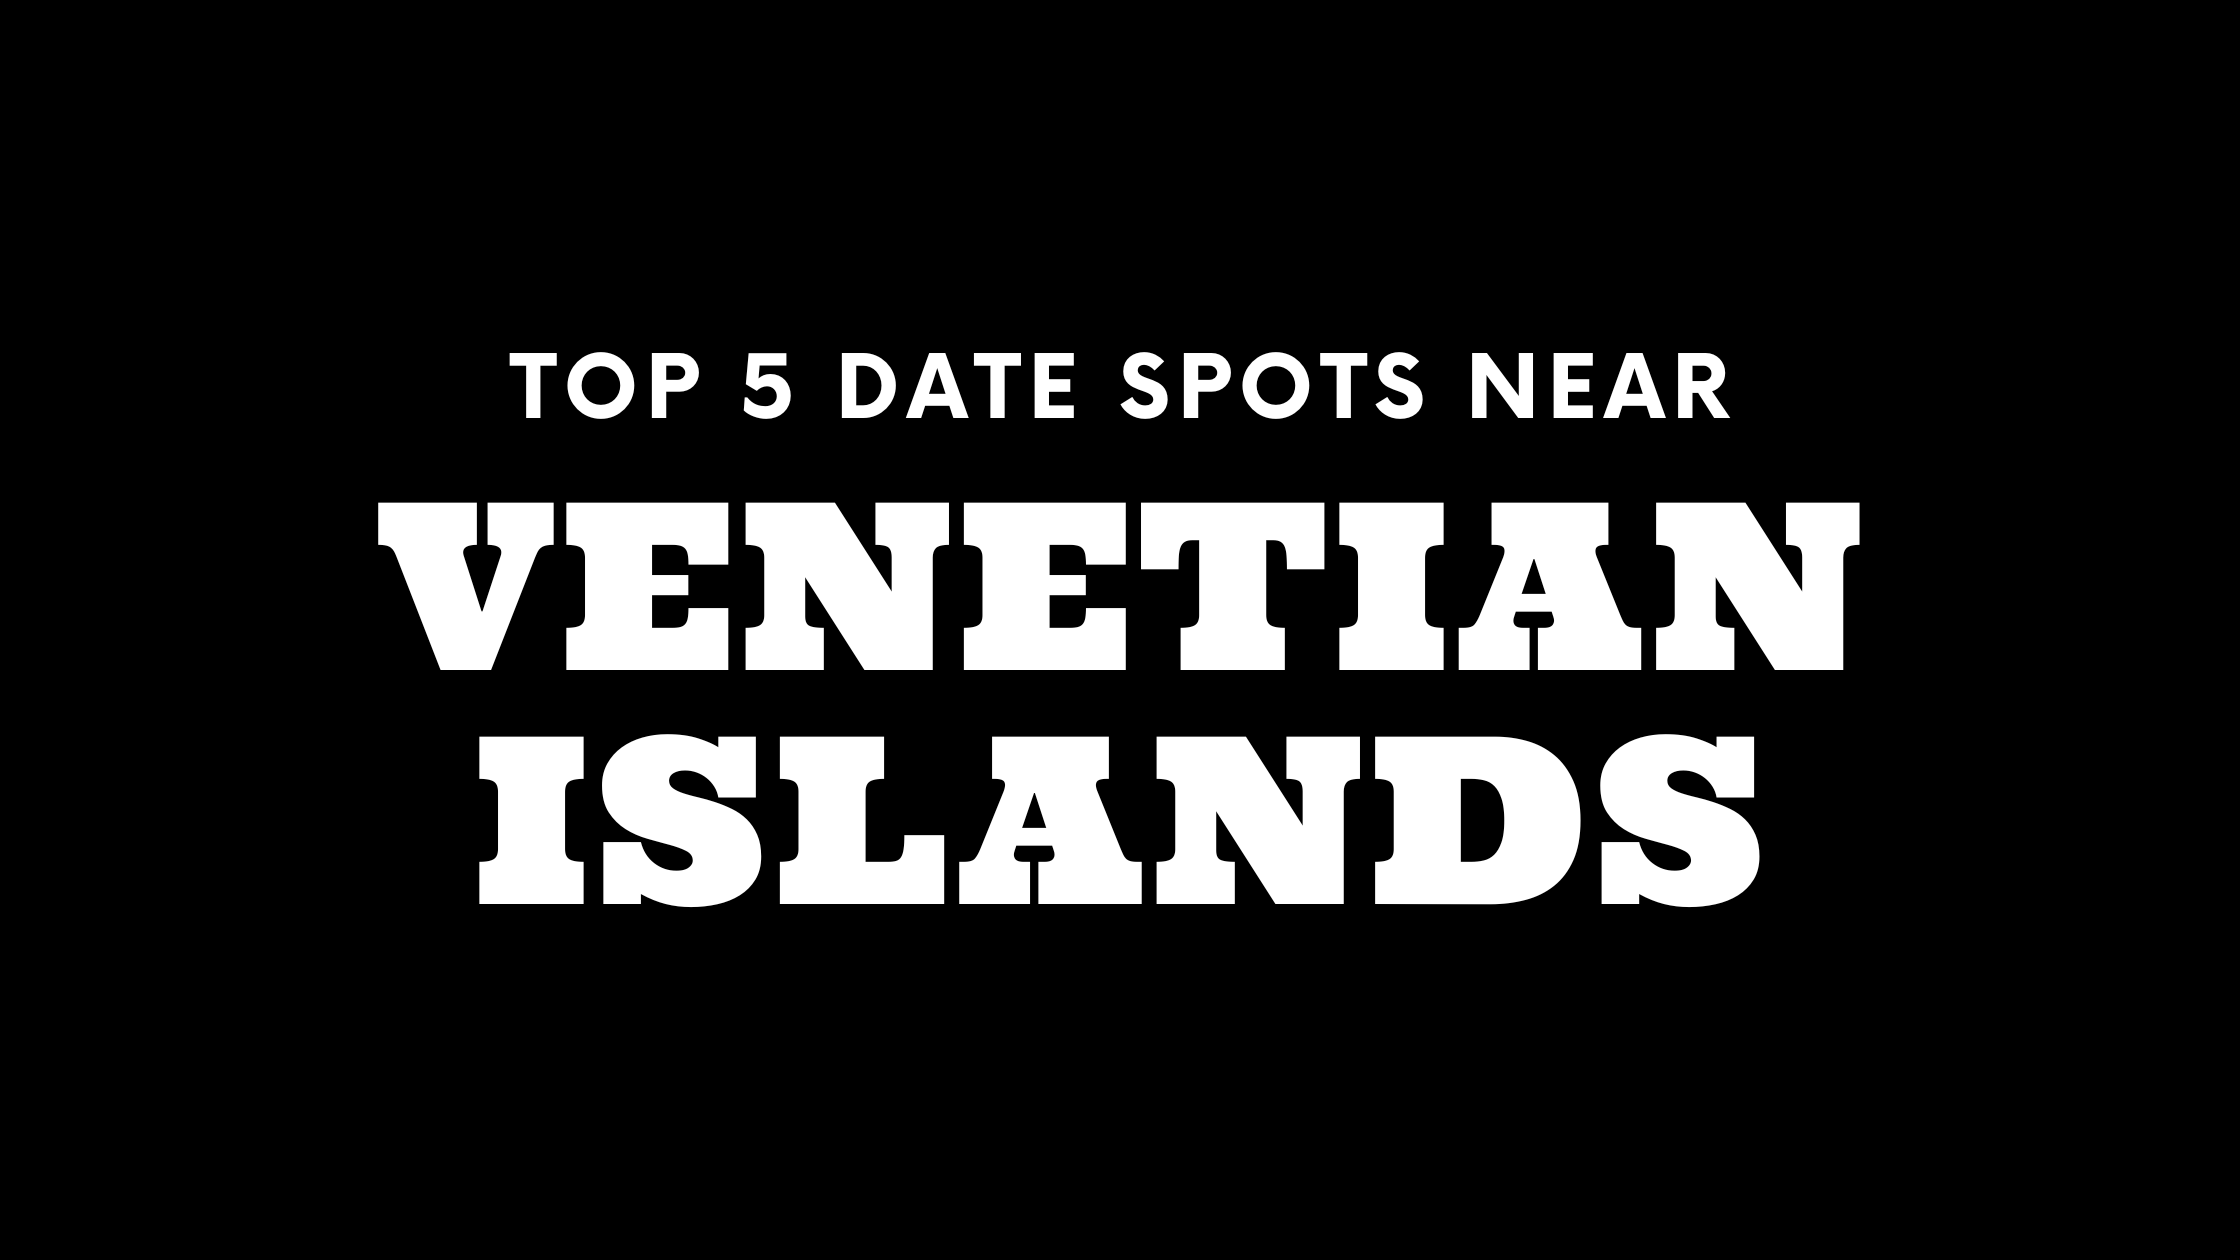 Top 5 Date Spots Near Venetian Islands